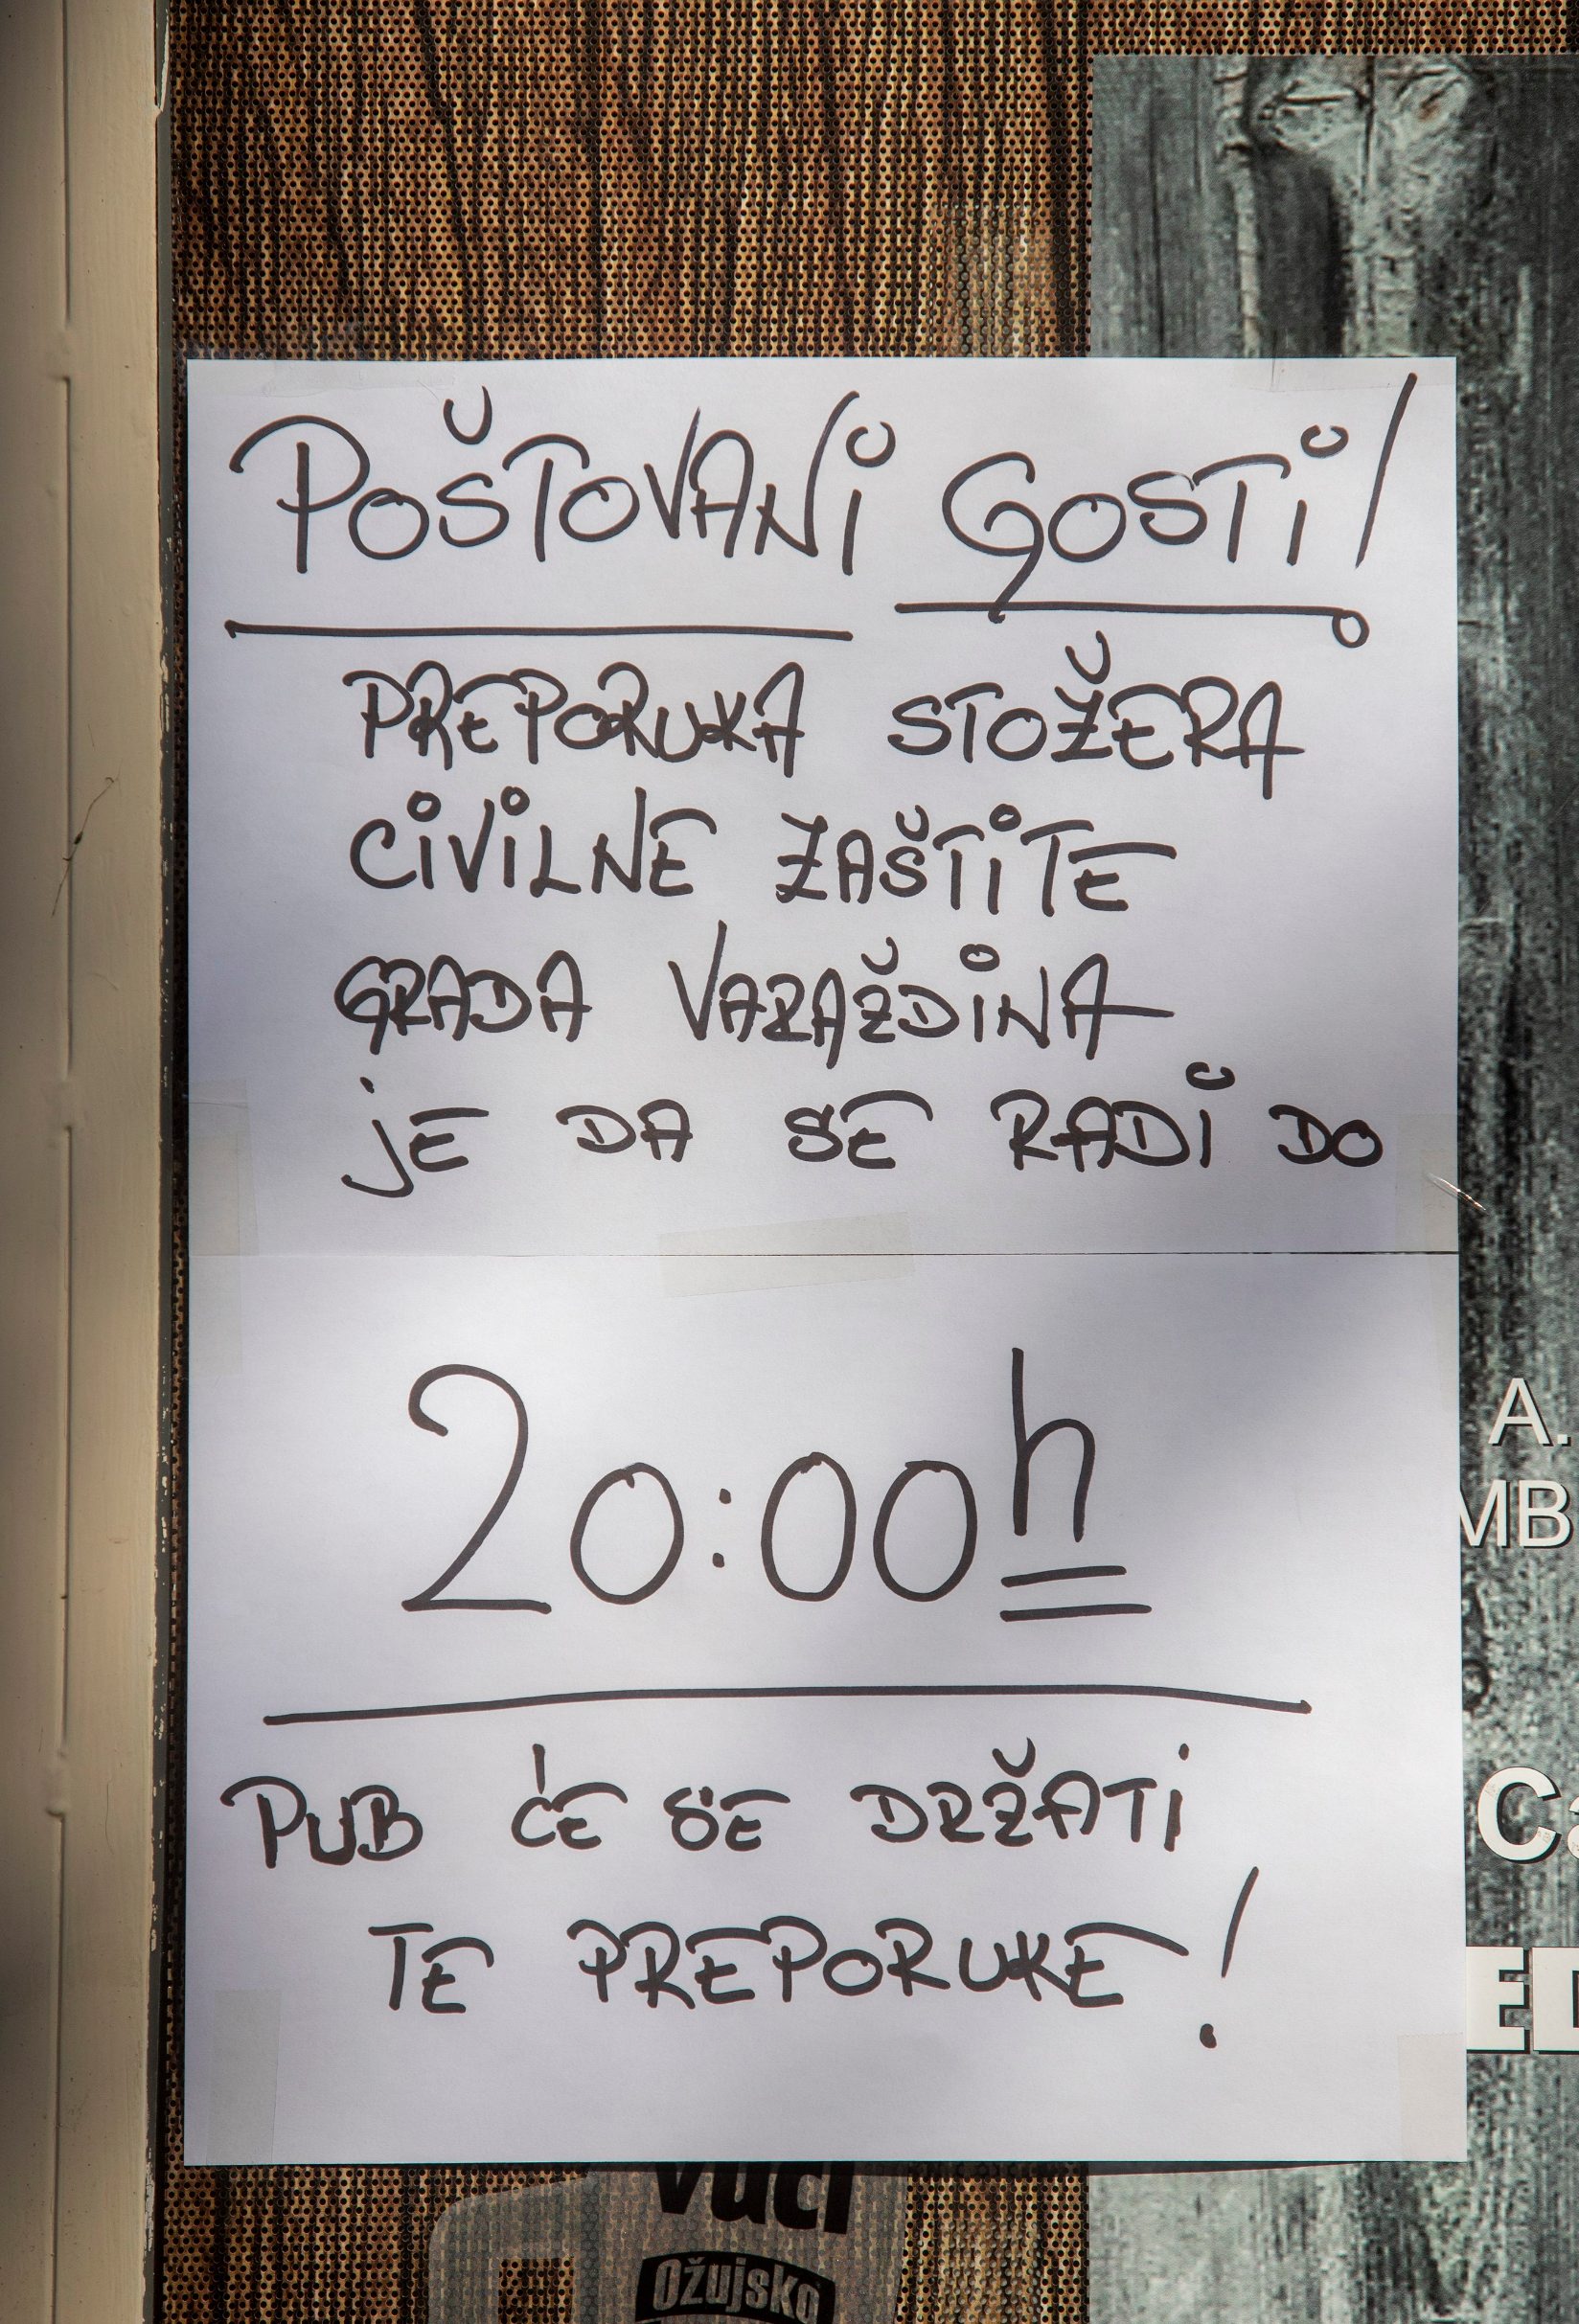 Varazdin, 160320.
Kafici u Varazdinu na preporuku Stozera civilne zastite rade do 20 sati i imaju dezinficijense za goste i osoblje.
Na fotografiji: Pub Medina skrinja.
Foto: Zeljko Hajdinjak / CROPIX